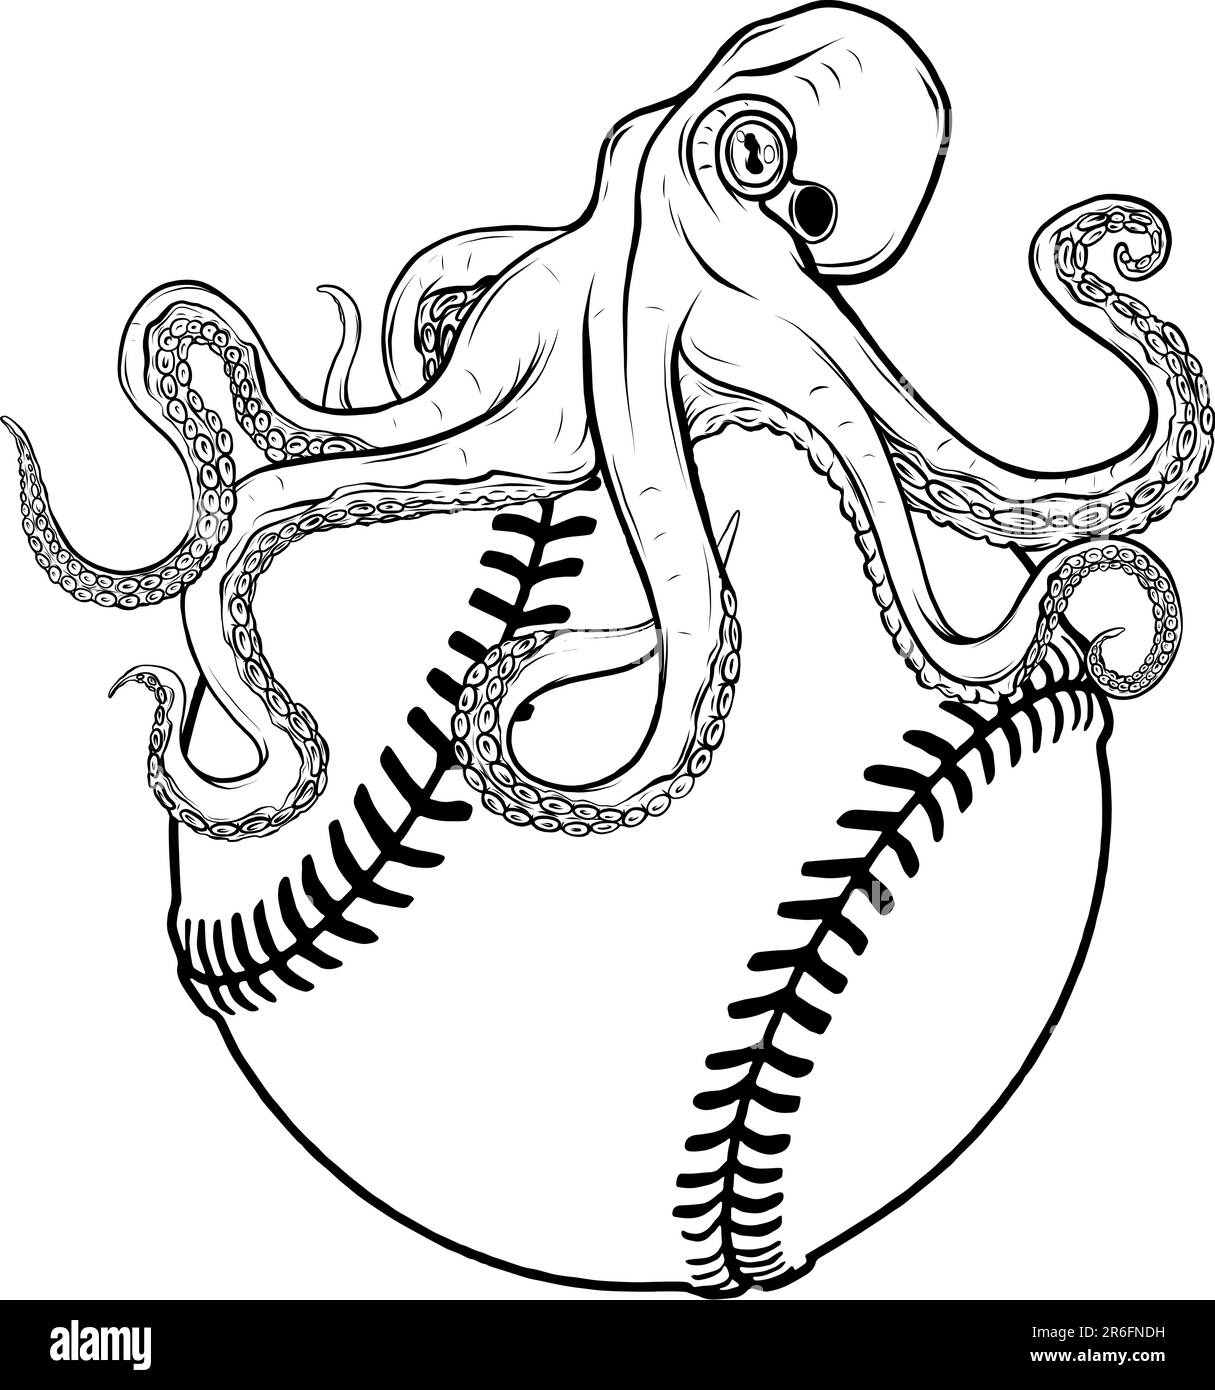 Illustrazione vettoriale di polpo monocromatico su palla da baseball Illustrazione Vettoriale